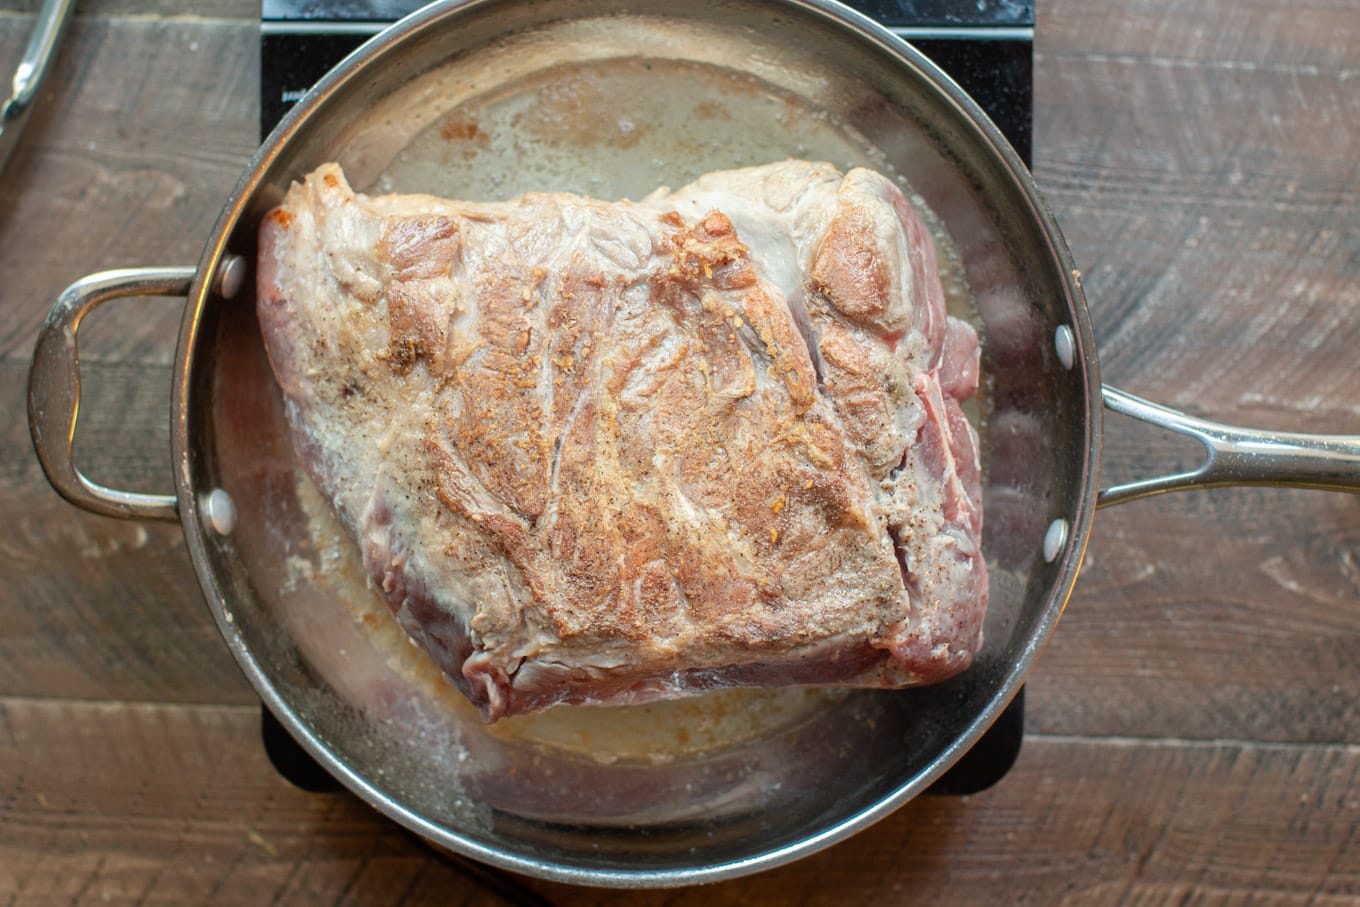 pork shoulder in a pan being browned.